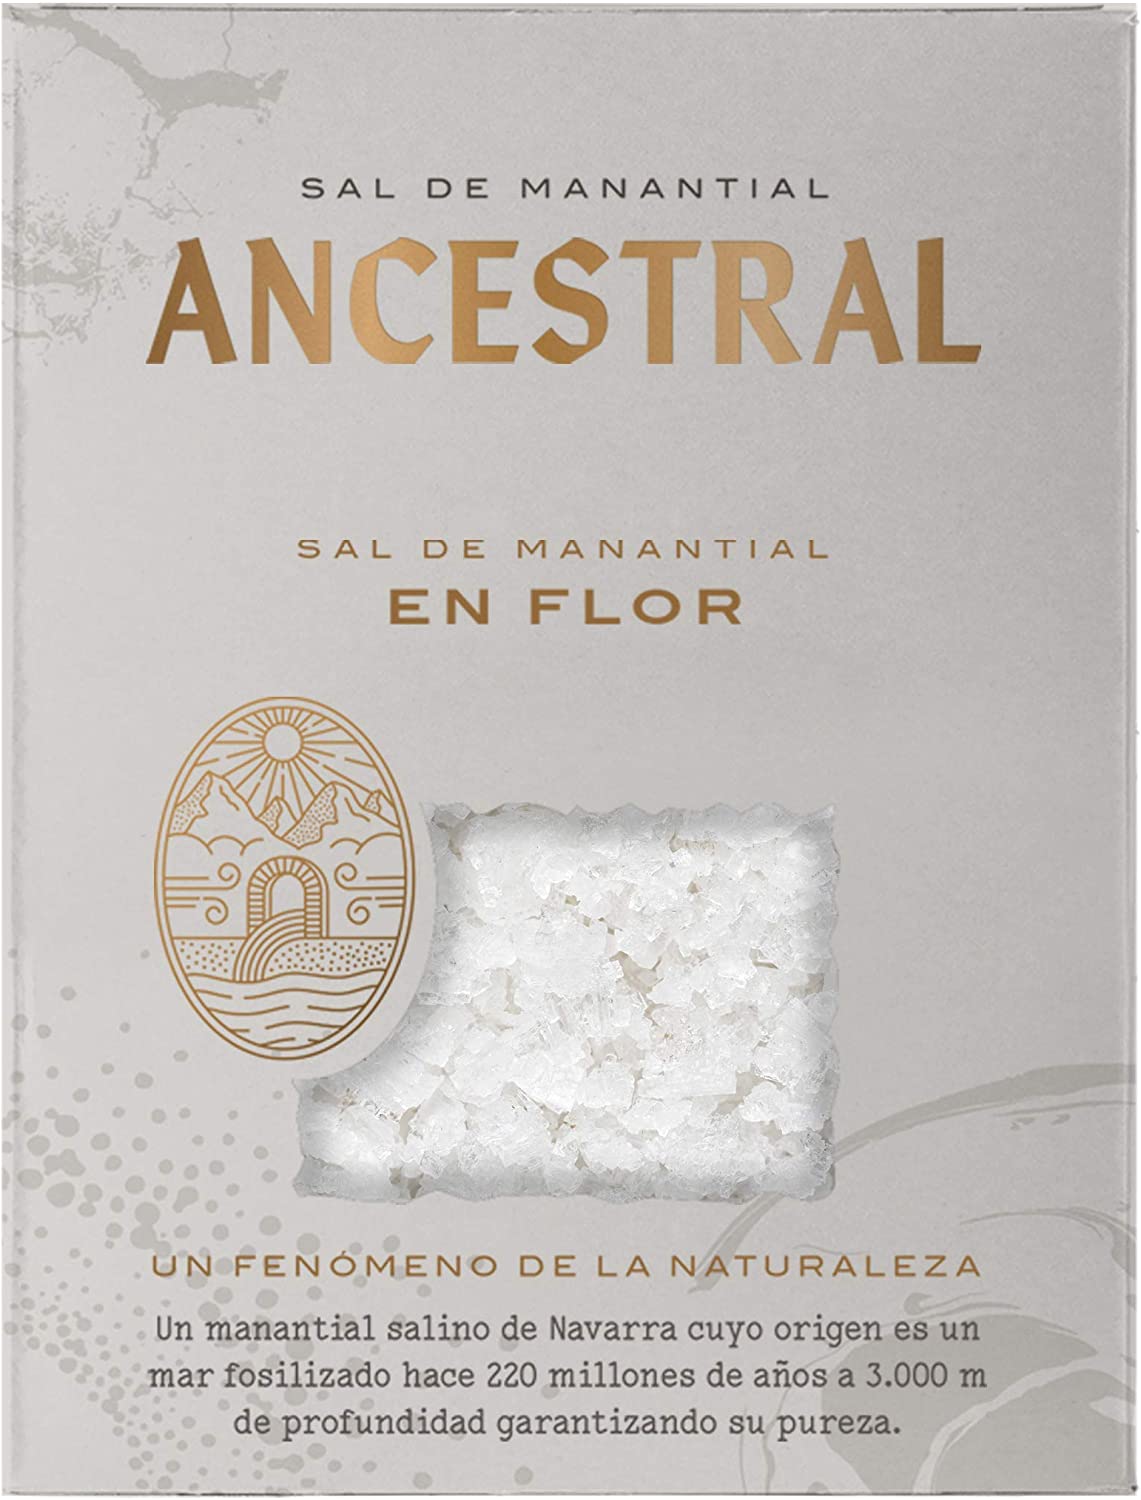 SAL DE MANANTIAL ANCESTRAL NATURAL SPRING FLOR DE SAL